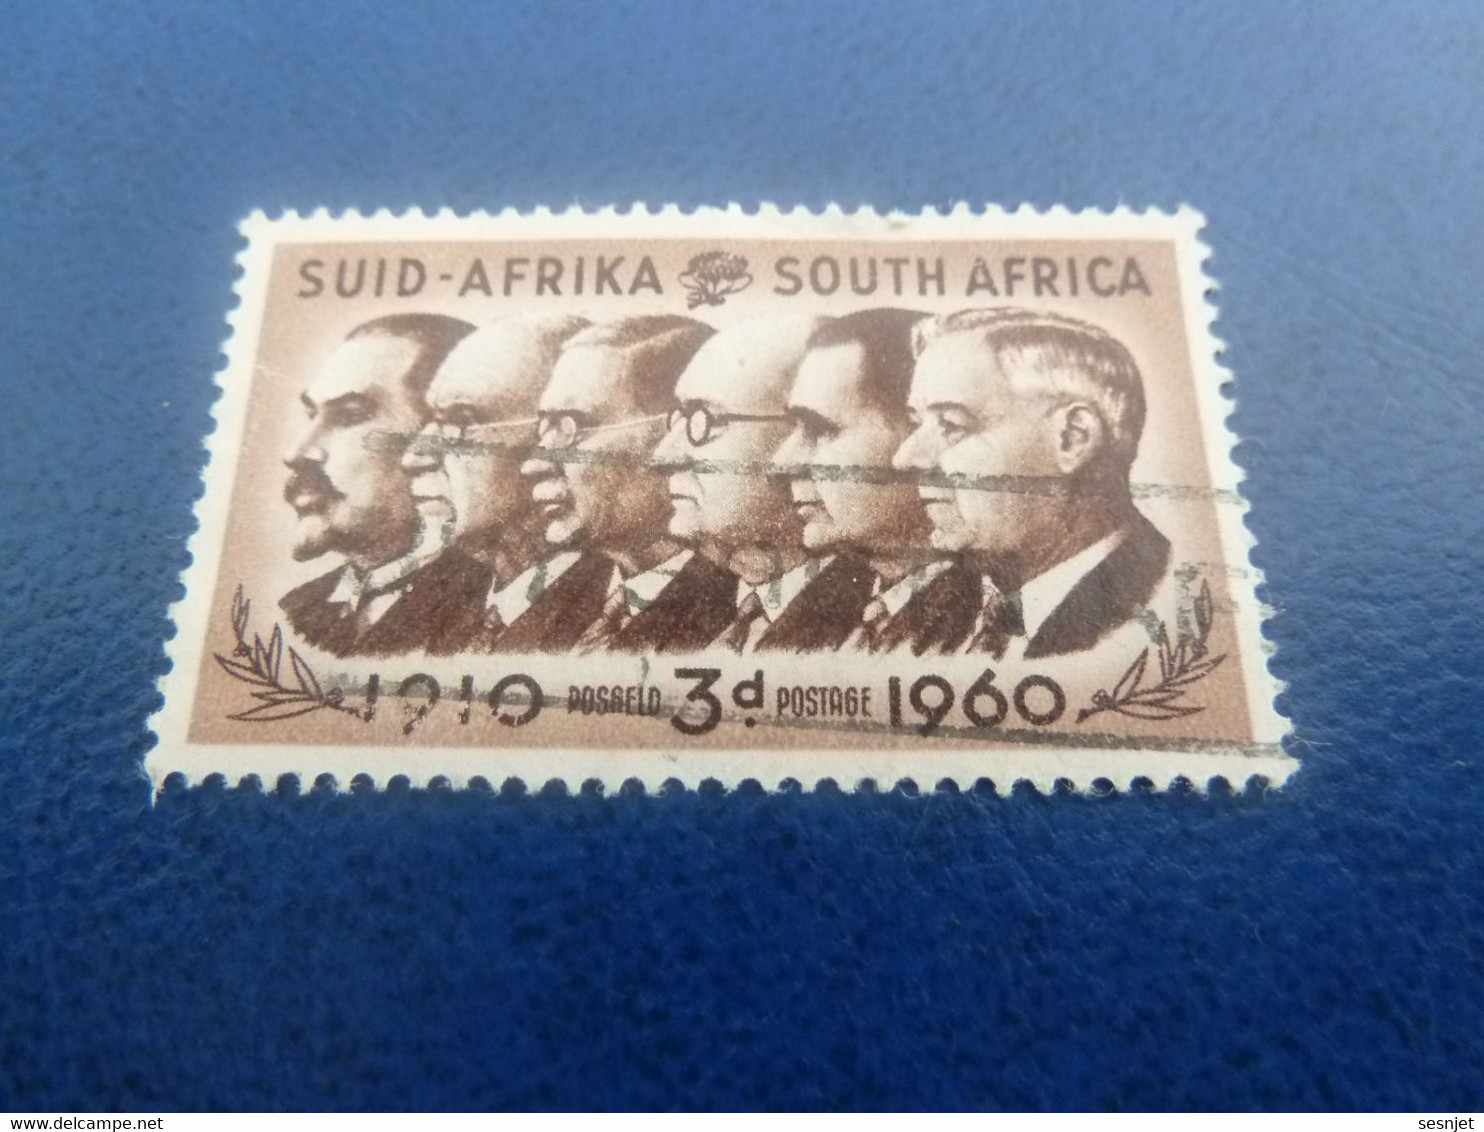 Suid-Africa - South Africa - Célébrités - 3 D. - Postage - Brun Et Brun Foncé - Oblitéré - Année 1960 - - Used Stamps